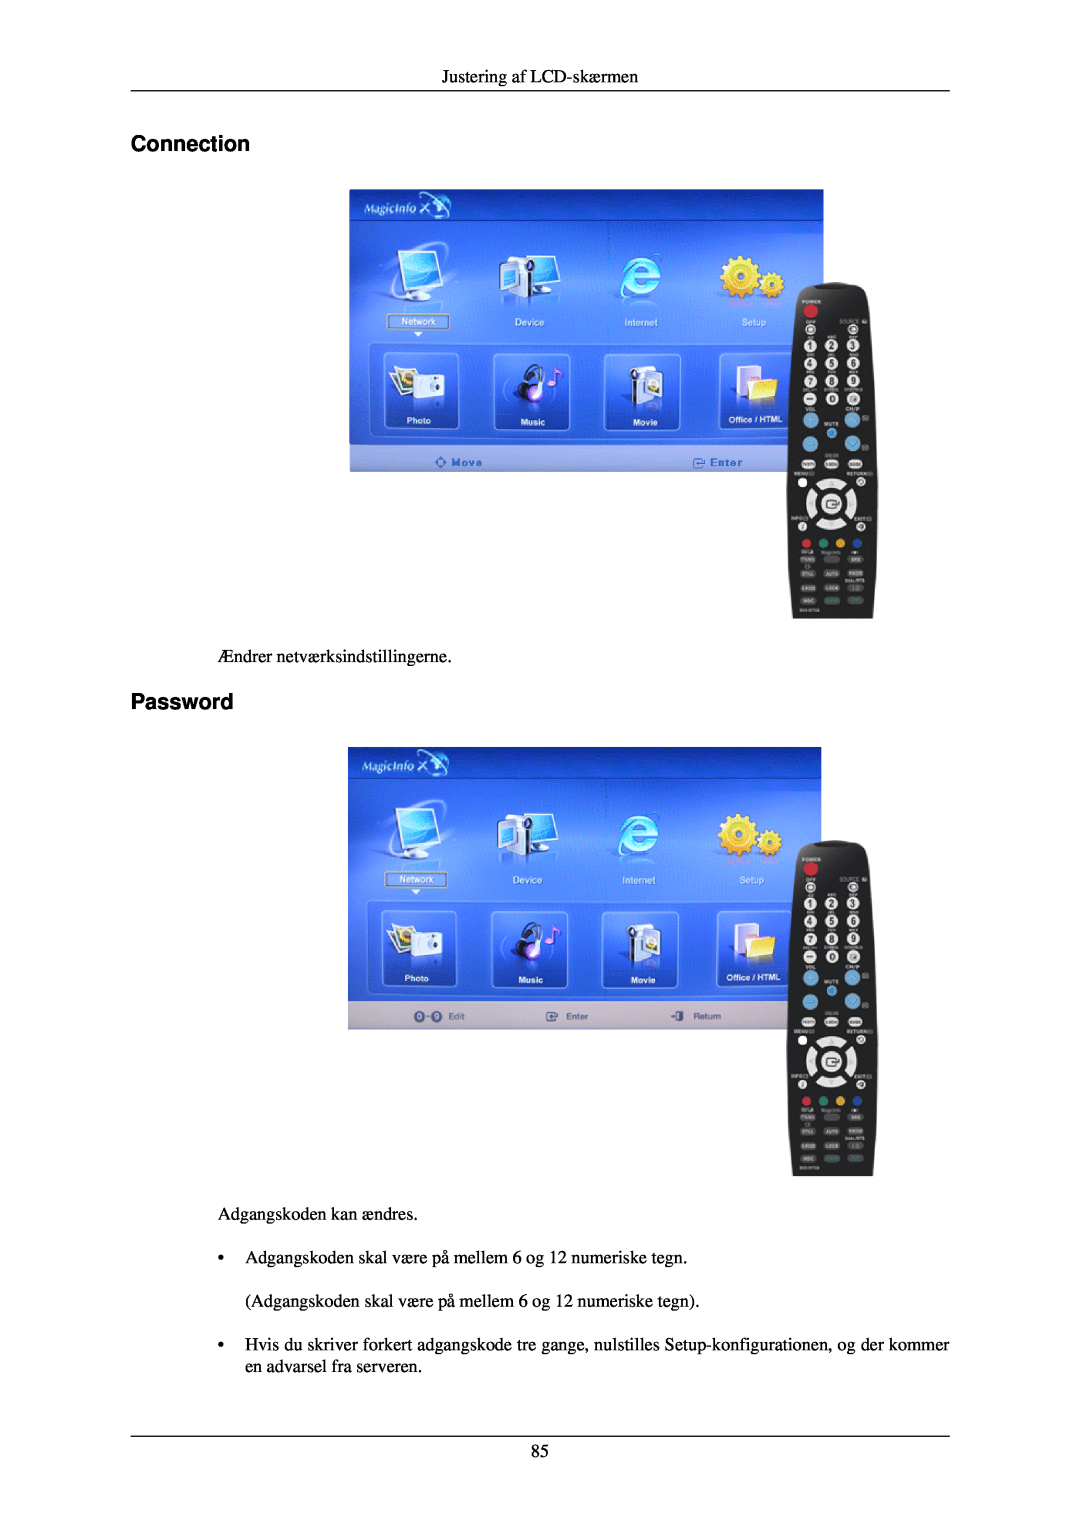 Samsung LH40TCUMBG/EN, LH46TCUMBC/EN manual Connection, Password, Justering af LCD-skærmen, Ændrer netværksindstillingerne 